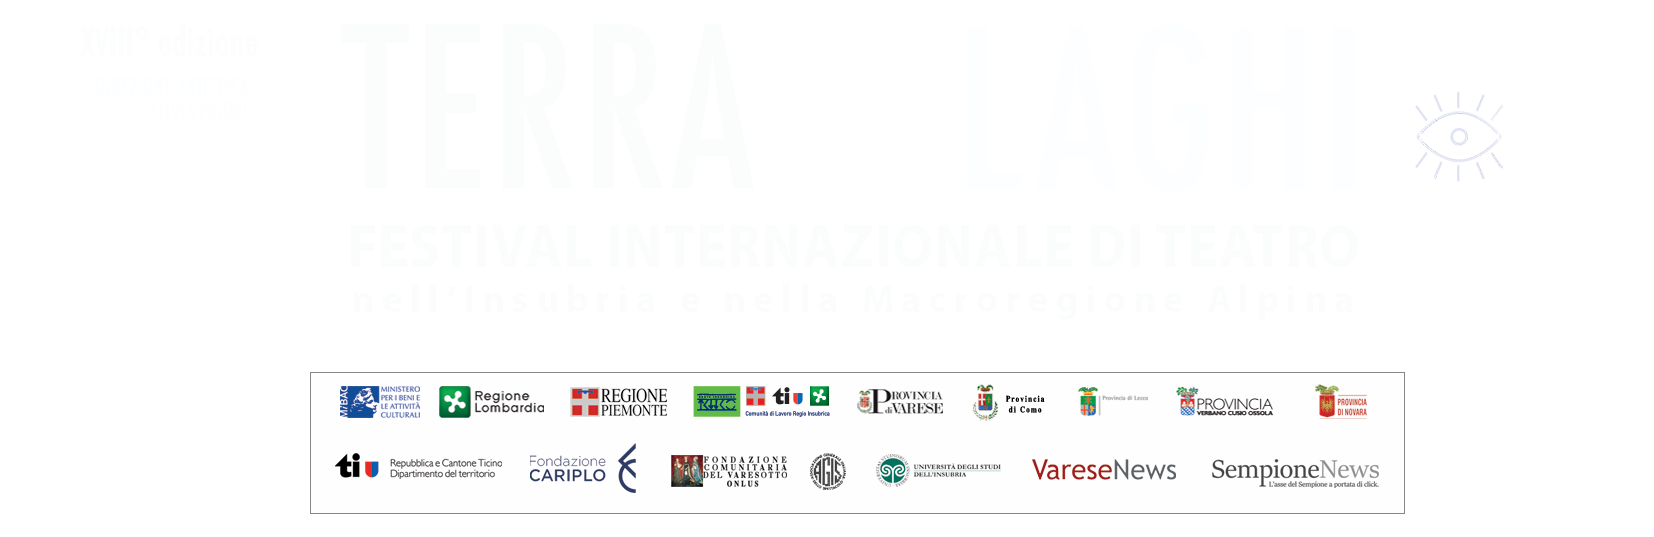 Banner sito Terra e Laghi copia